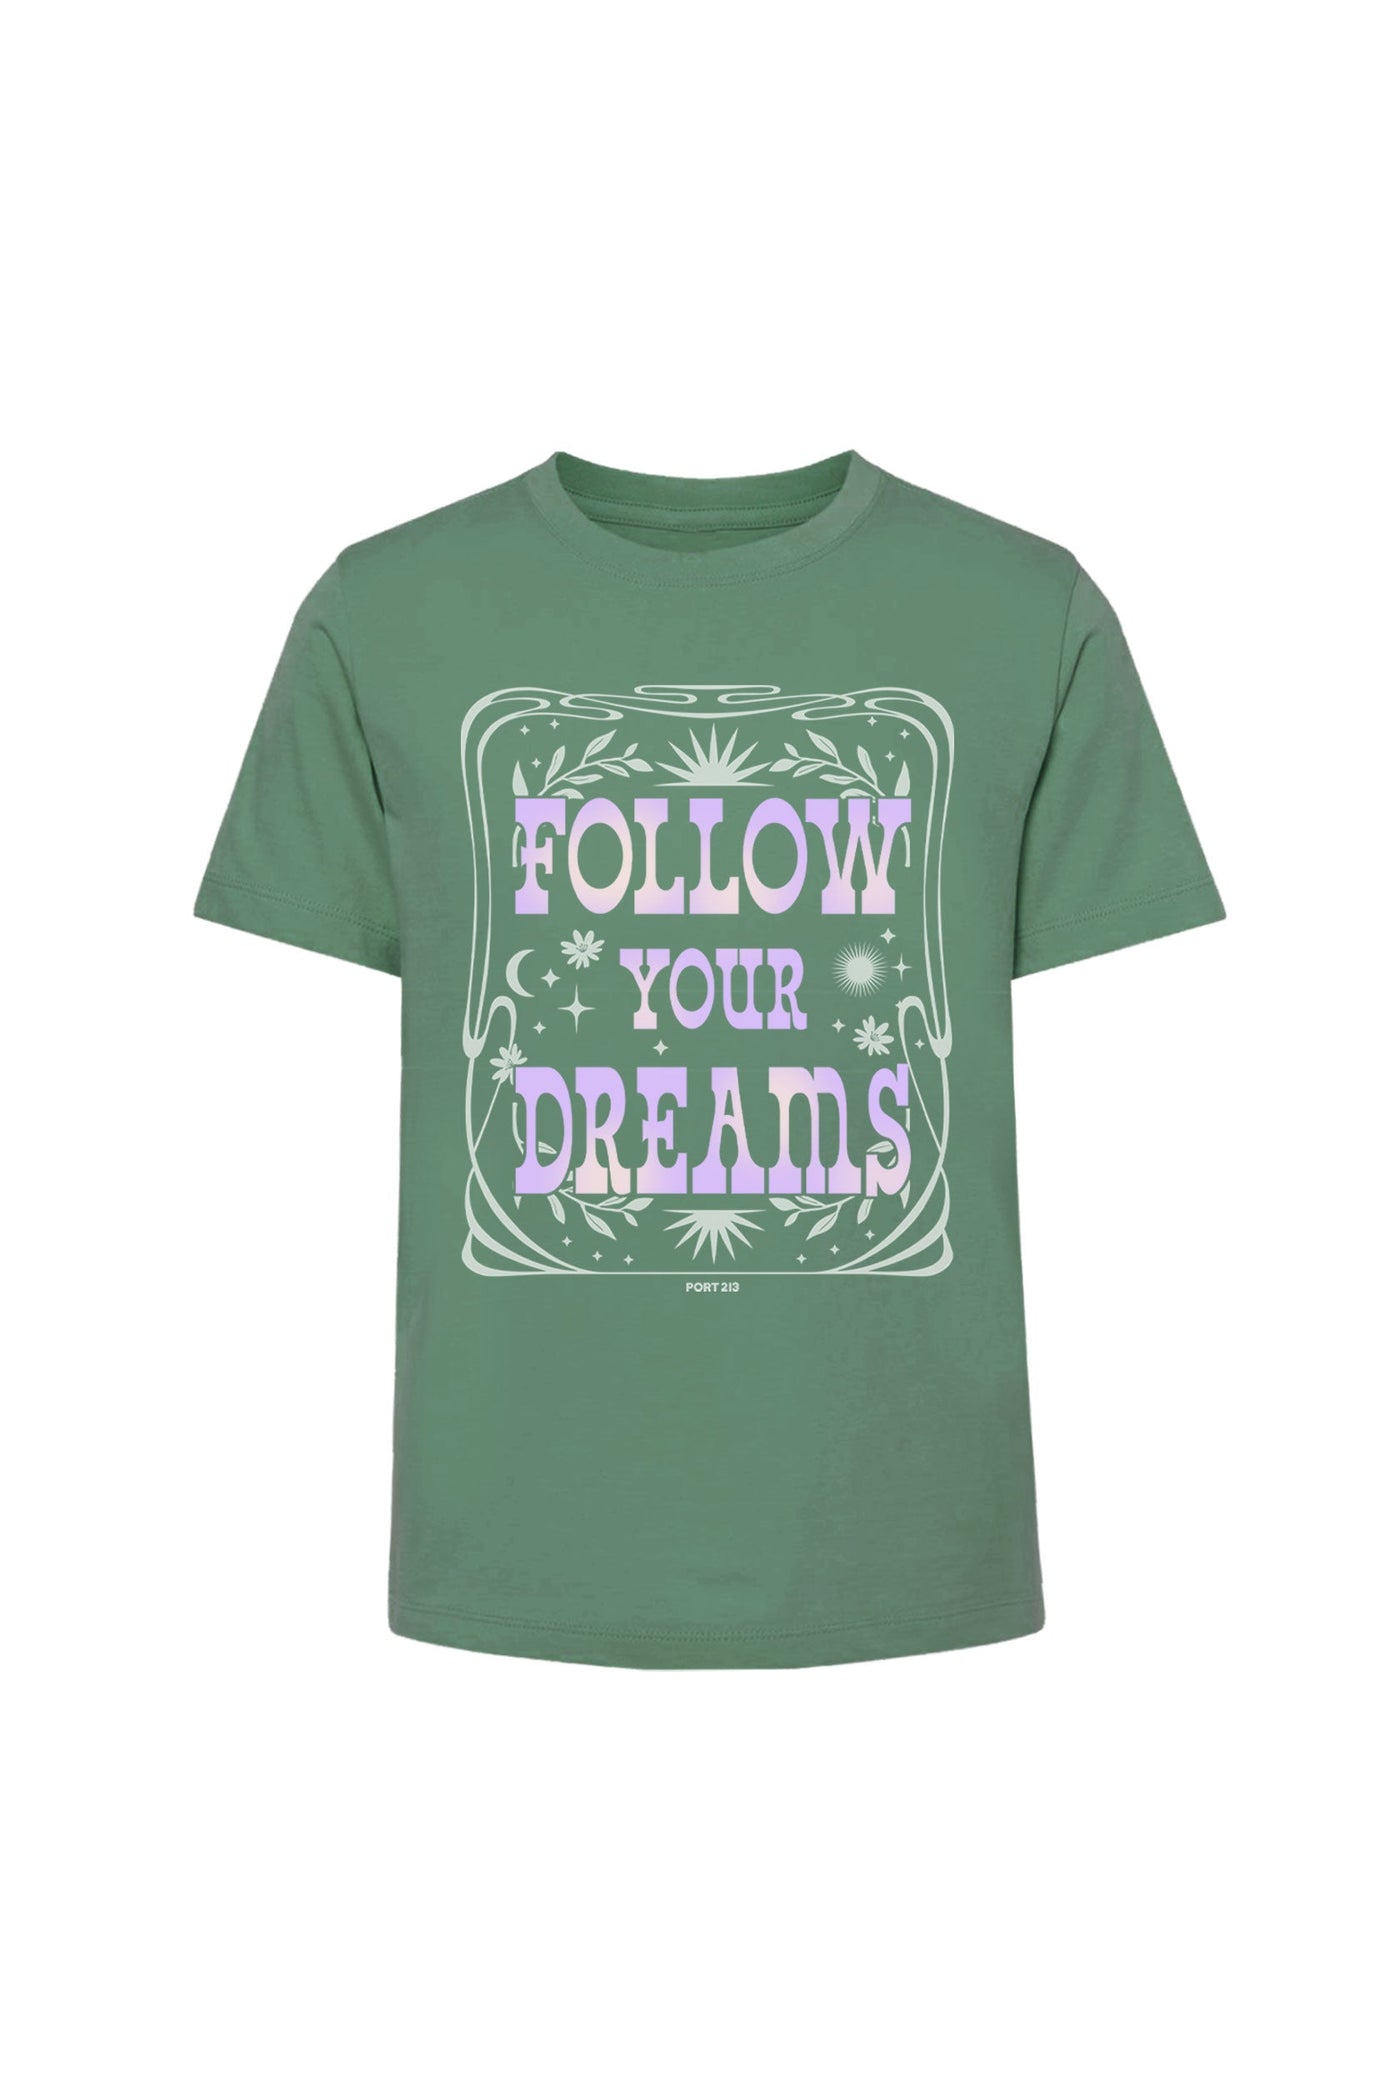 Follow Dreams T-shirt, Boys